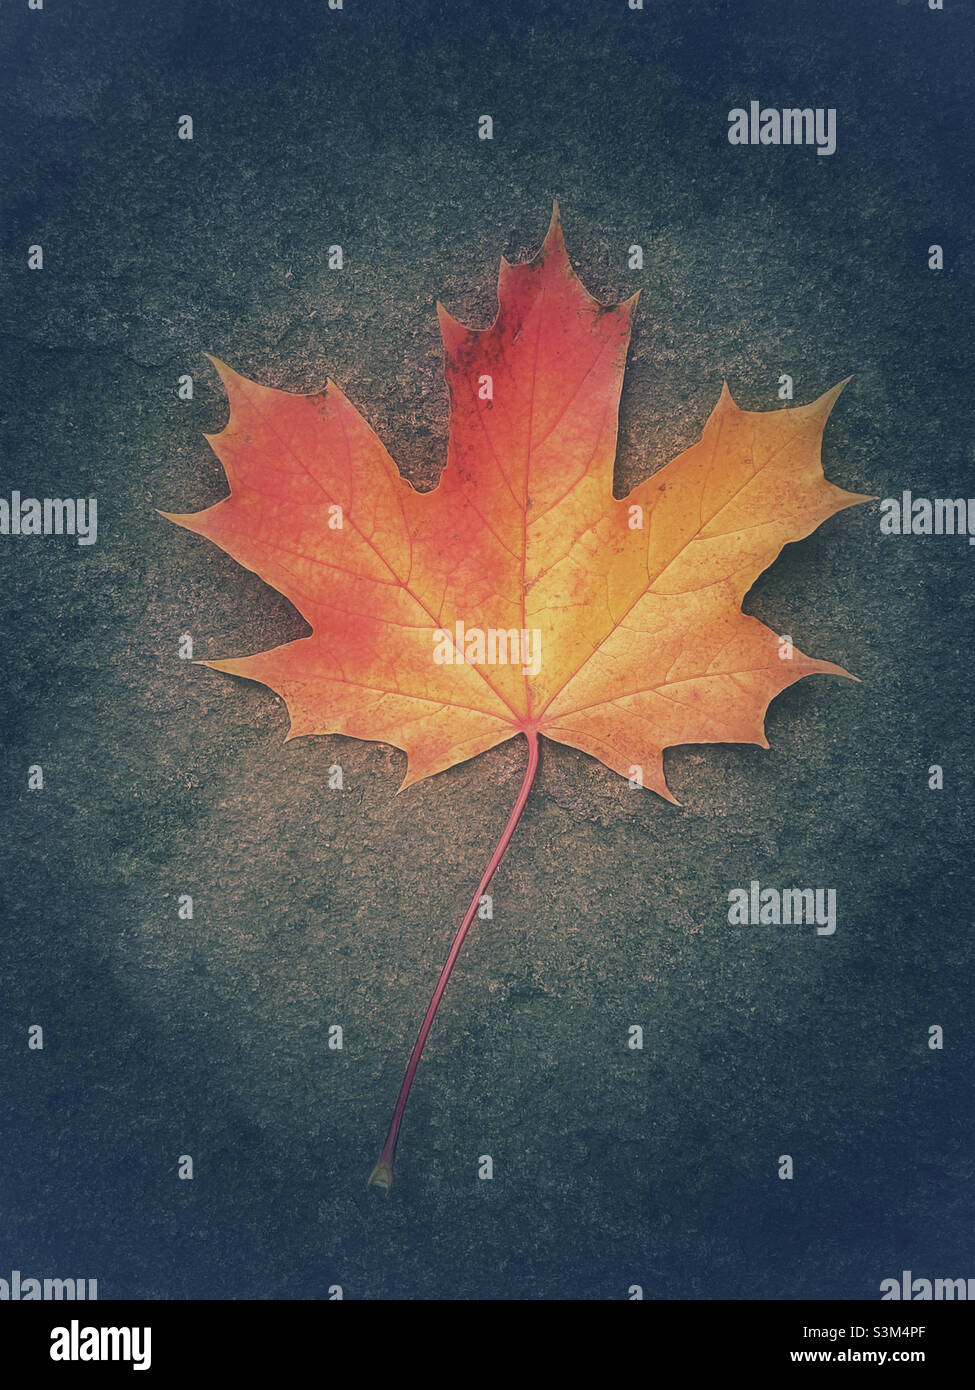 Una foglia di acero soletta mostra i colori dell'autunno (autunno). La foglia sta lentamente morendo e diventa gialla e poi rossa. Foto ©️ COLIN HOSKINS. Foto Stock